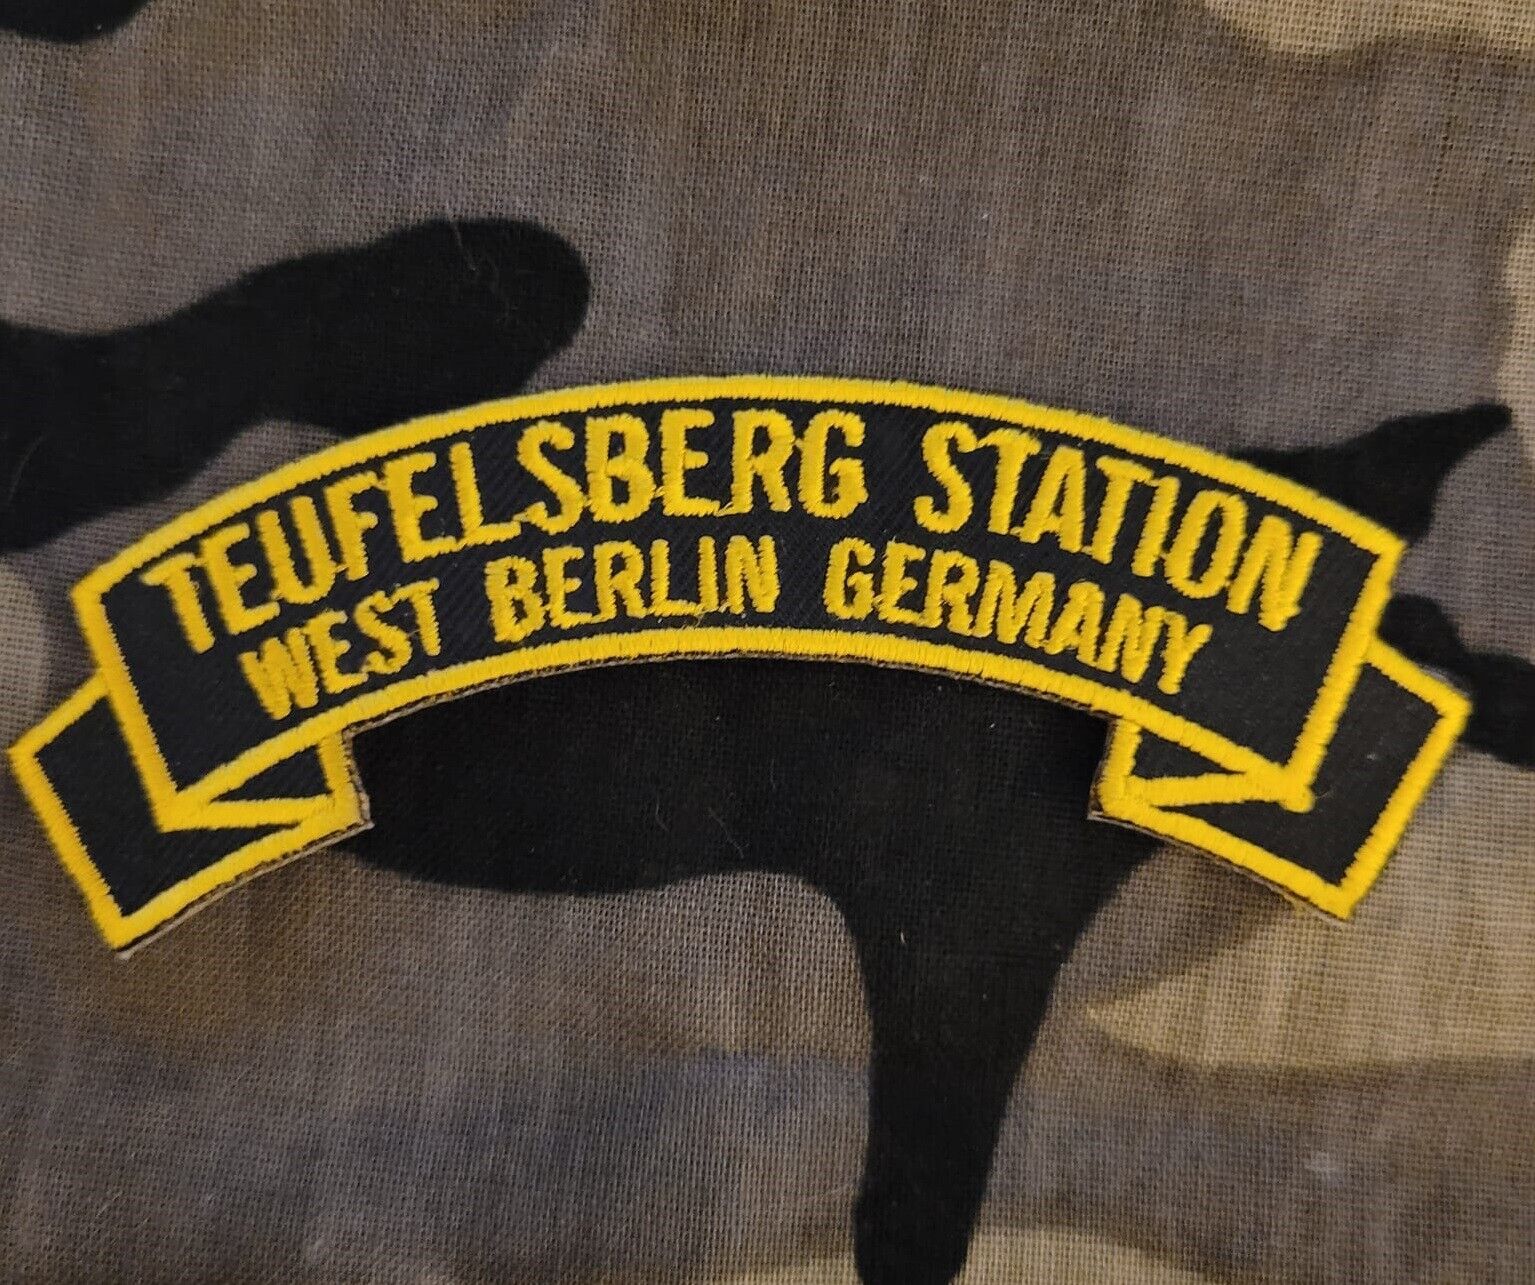 Teufelsberg Station, West Berlin Germany  4\